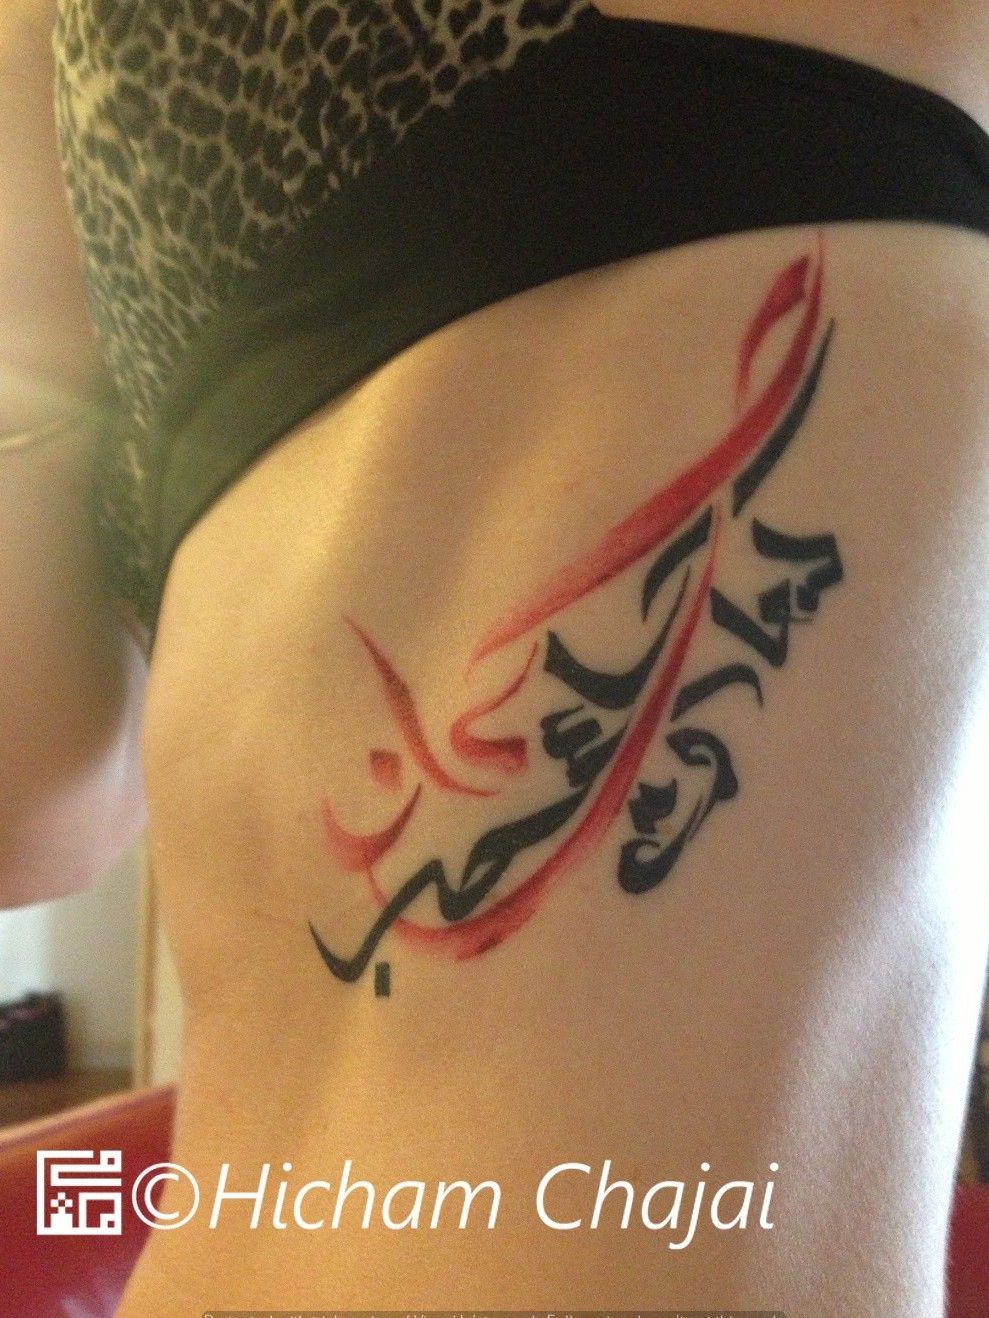 Tattoo uploaded by Hicham Chajai • Black and Red Tattoo #arabic  #arabicscript #arabictattoo #letter #lettering #letteringtattoo  #calligraphy #calligraphytattoo #sidetattoo #tattooedgirl #tattoogirl  #girlwithtattoos • Tattoodo